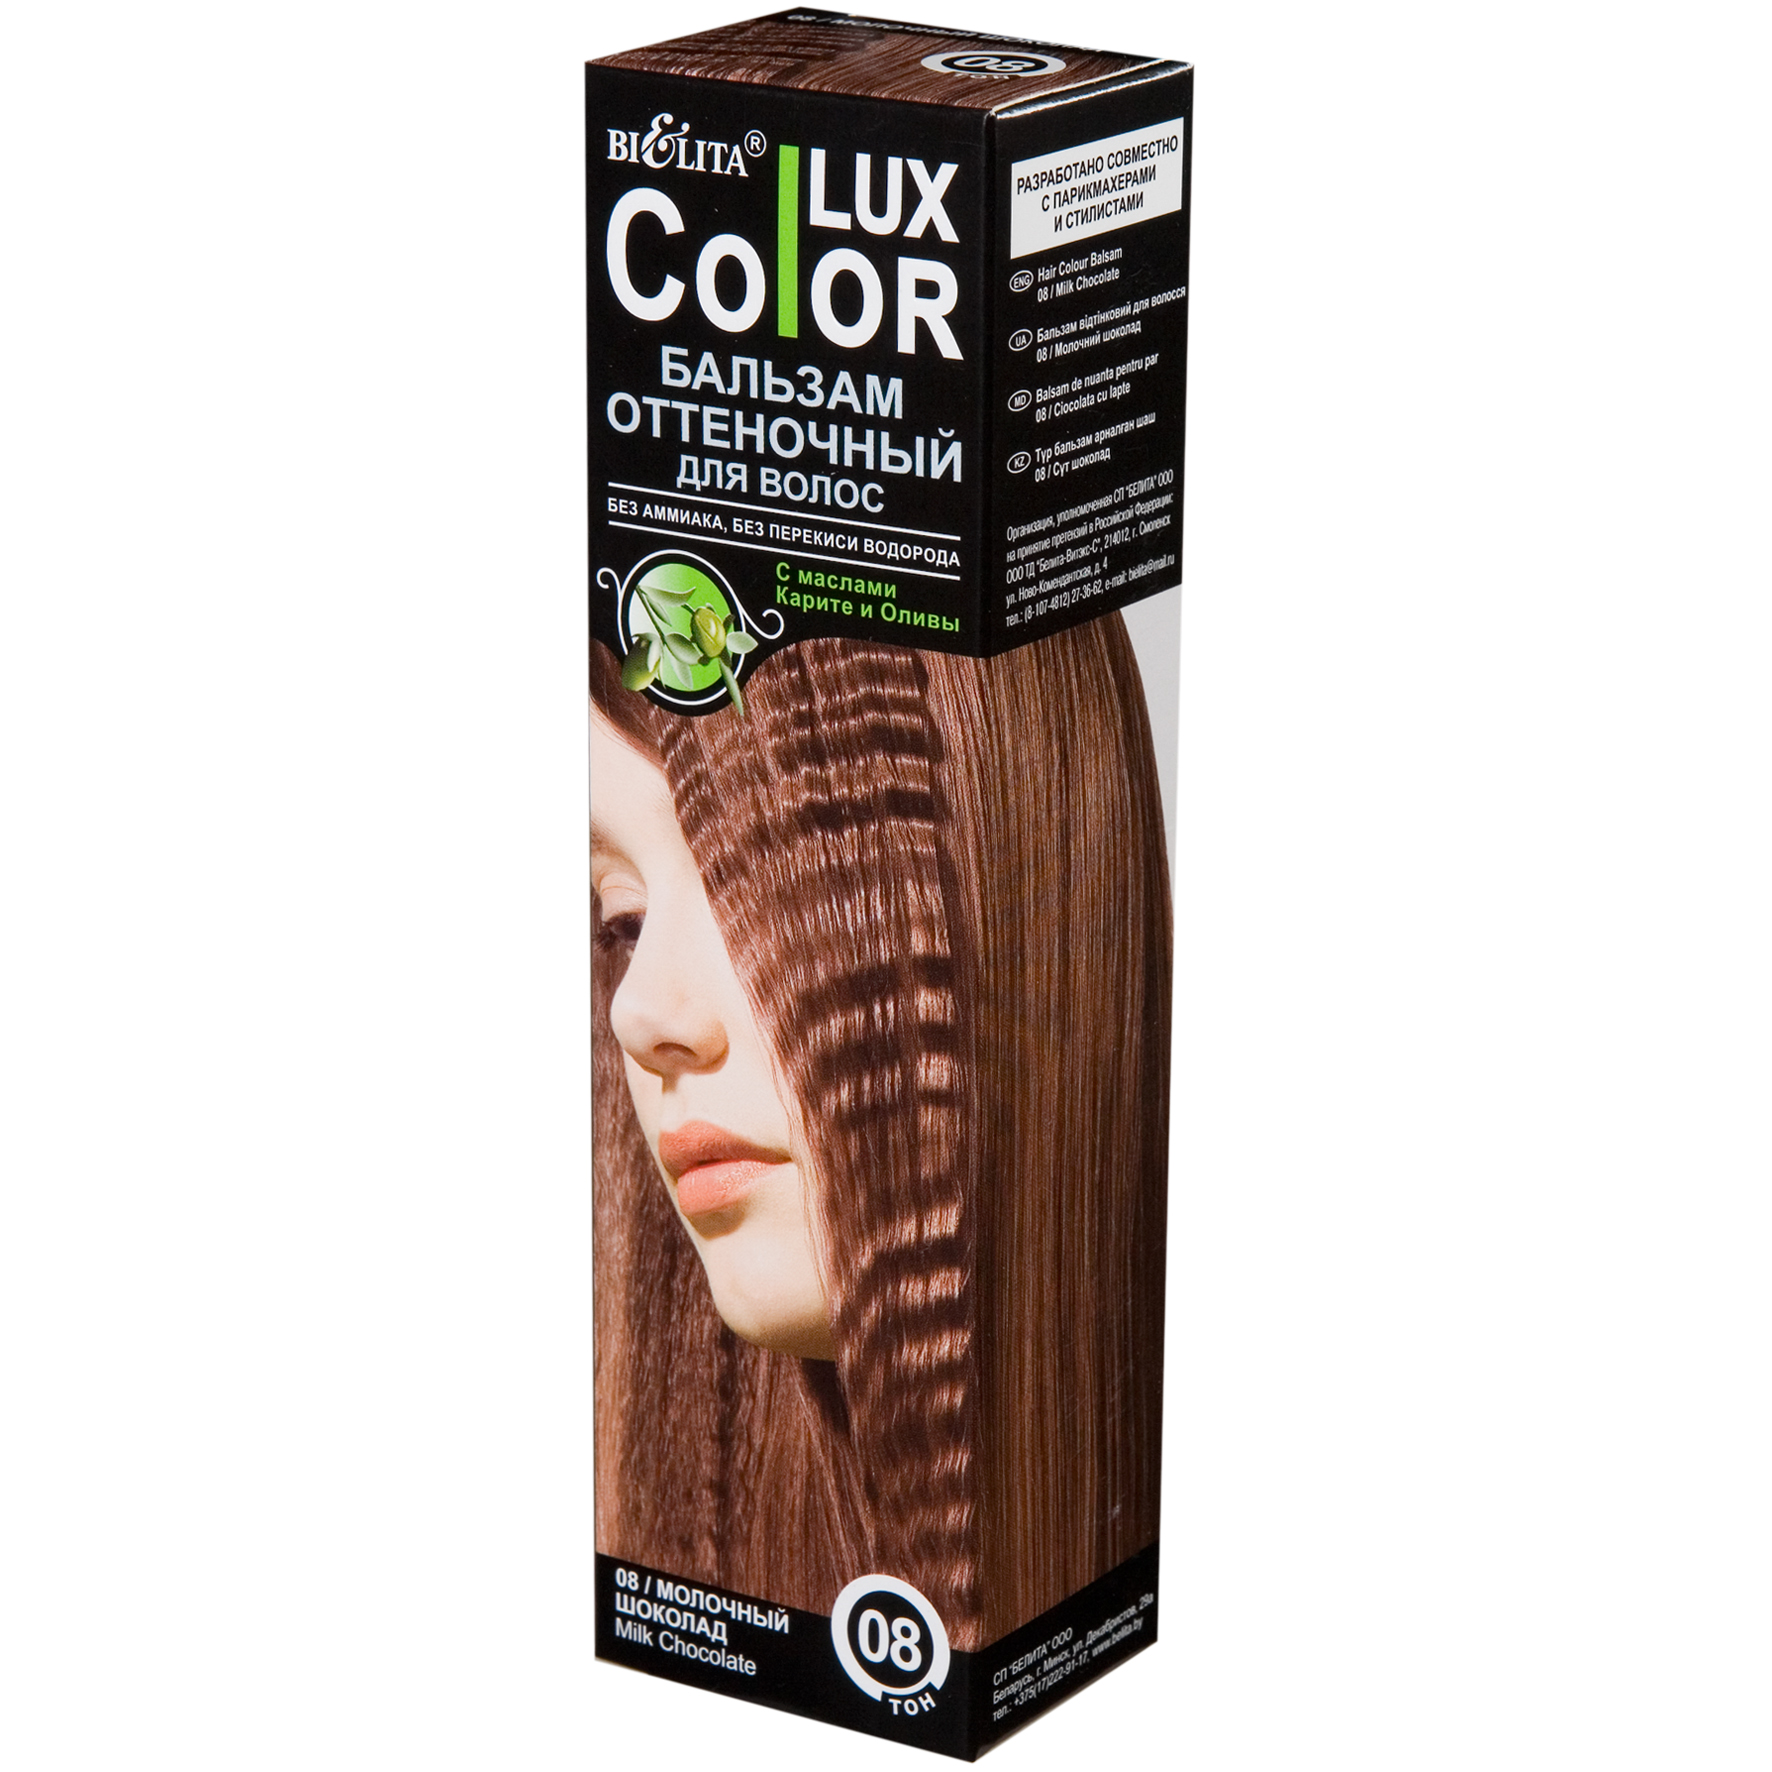 Оттеночный бальзам для волос "COLOR LUX" тон 08 молочный шоколад